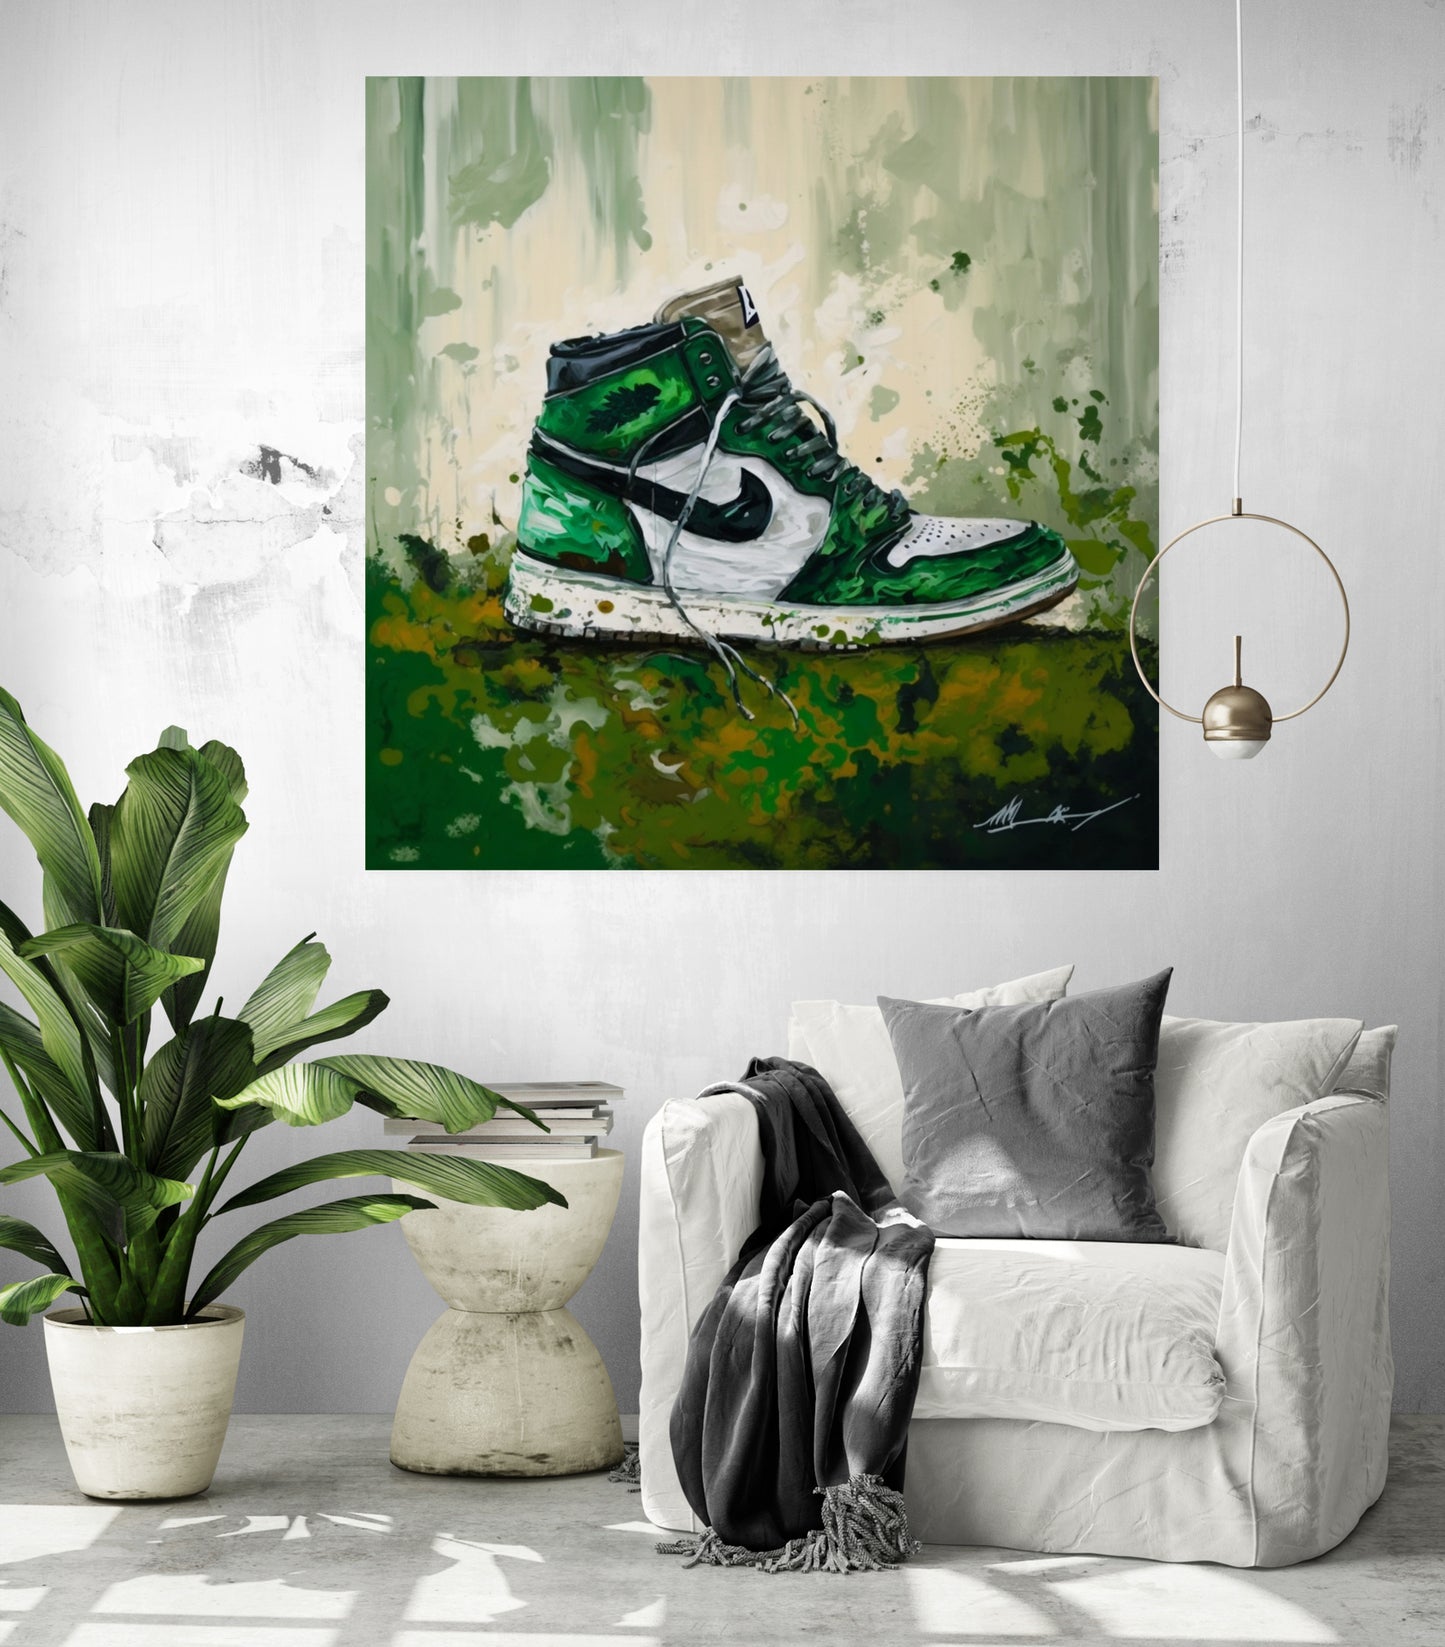 Oeuvre originale inspirée des baskets Air Jordan vertes pour décoration d'interieur..